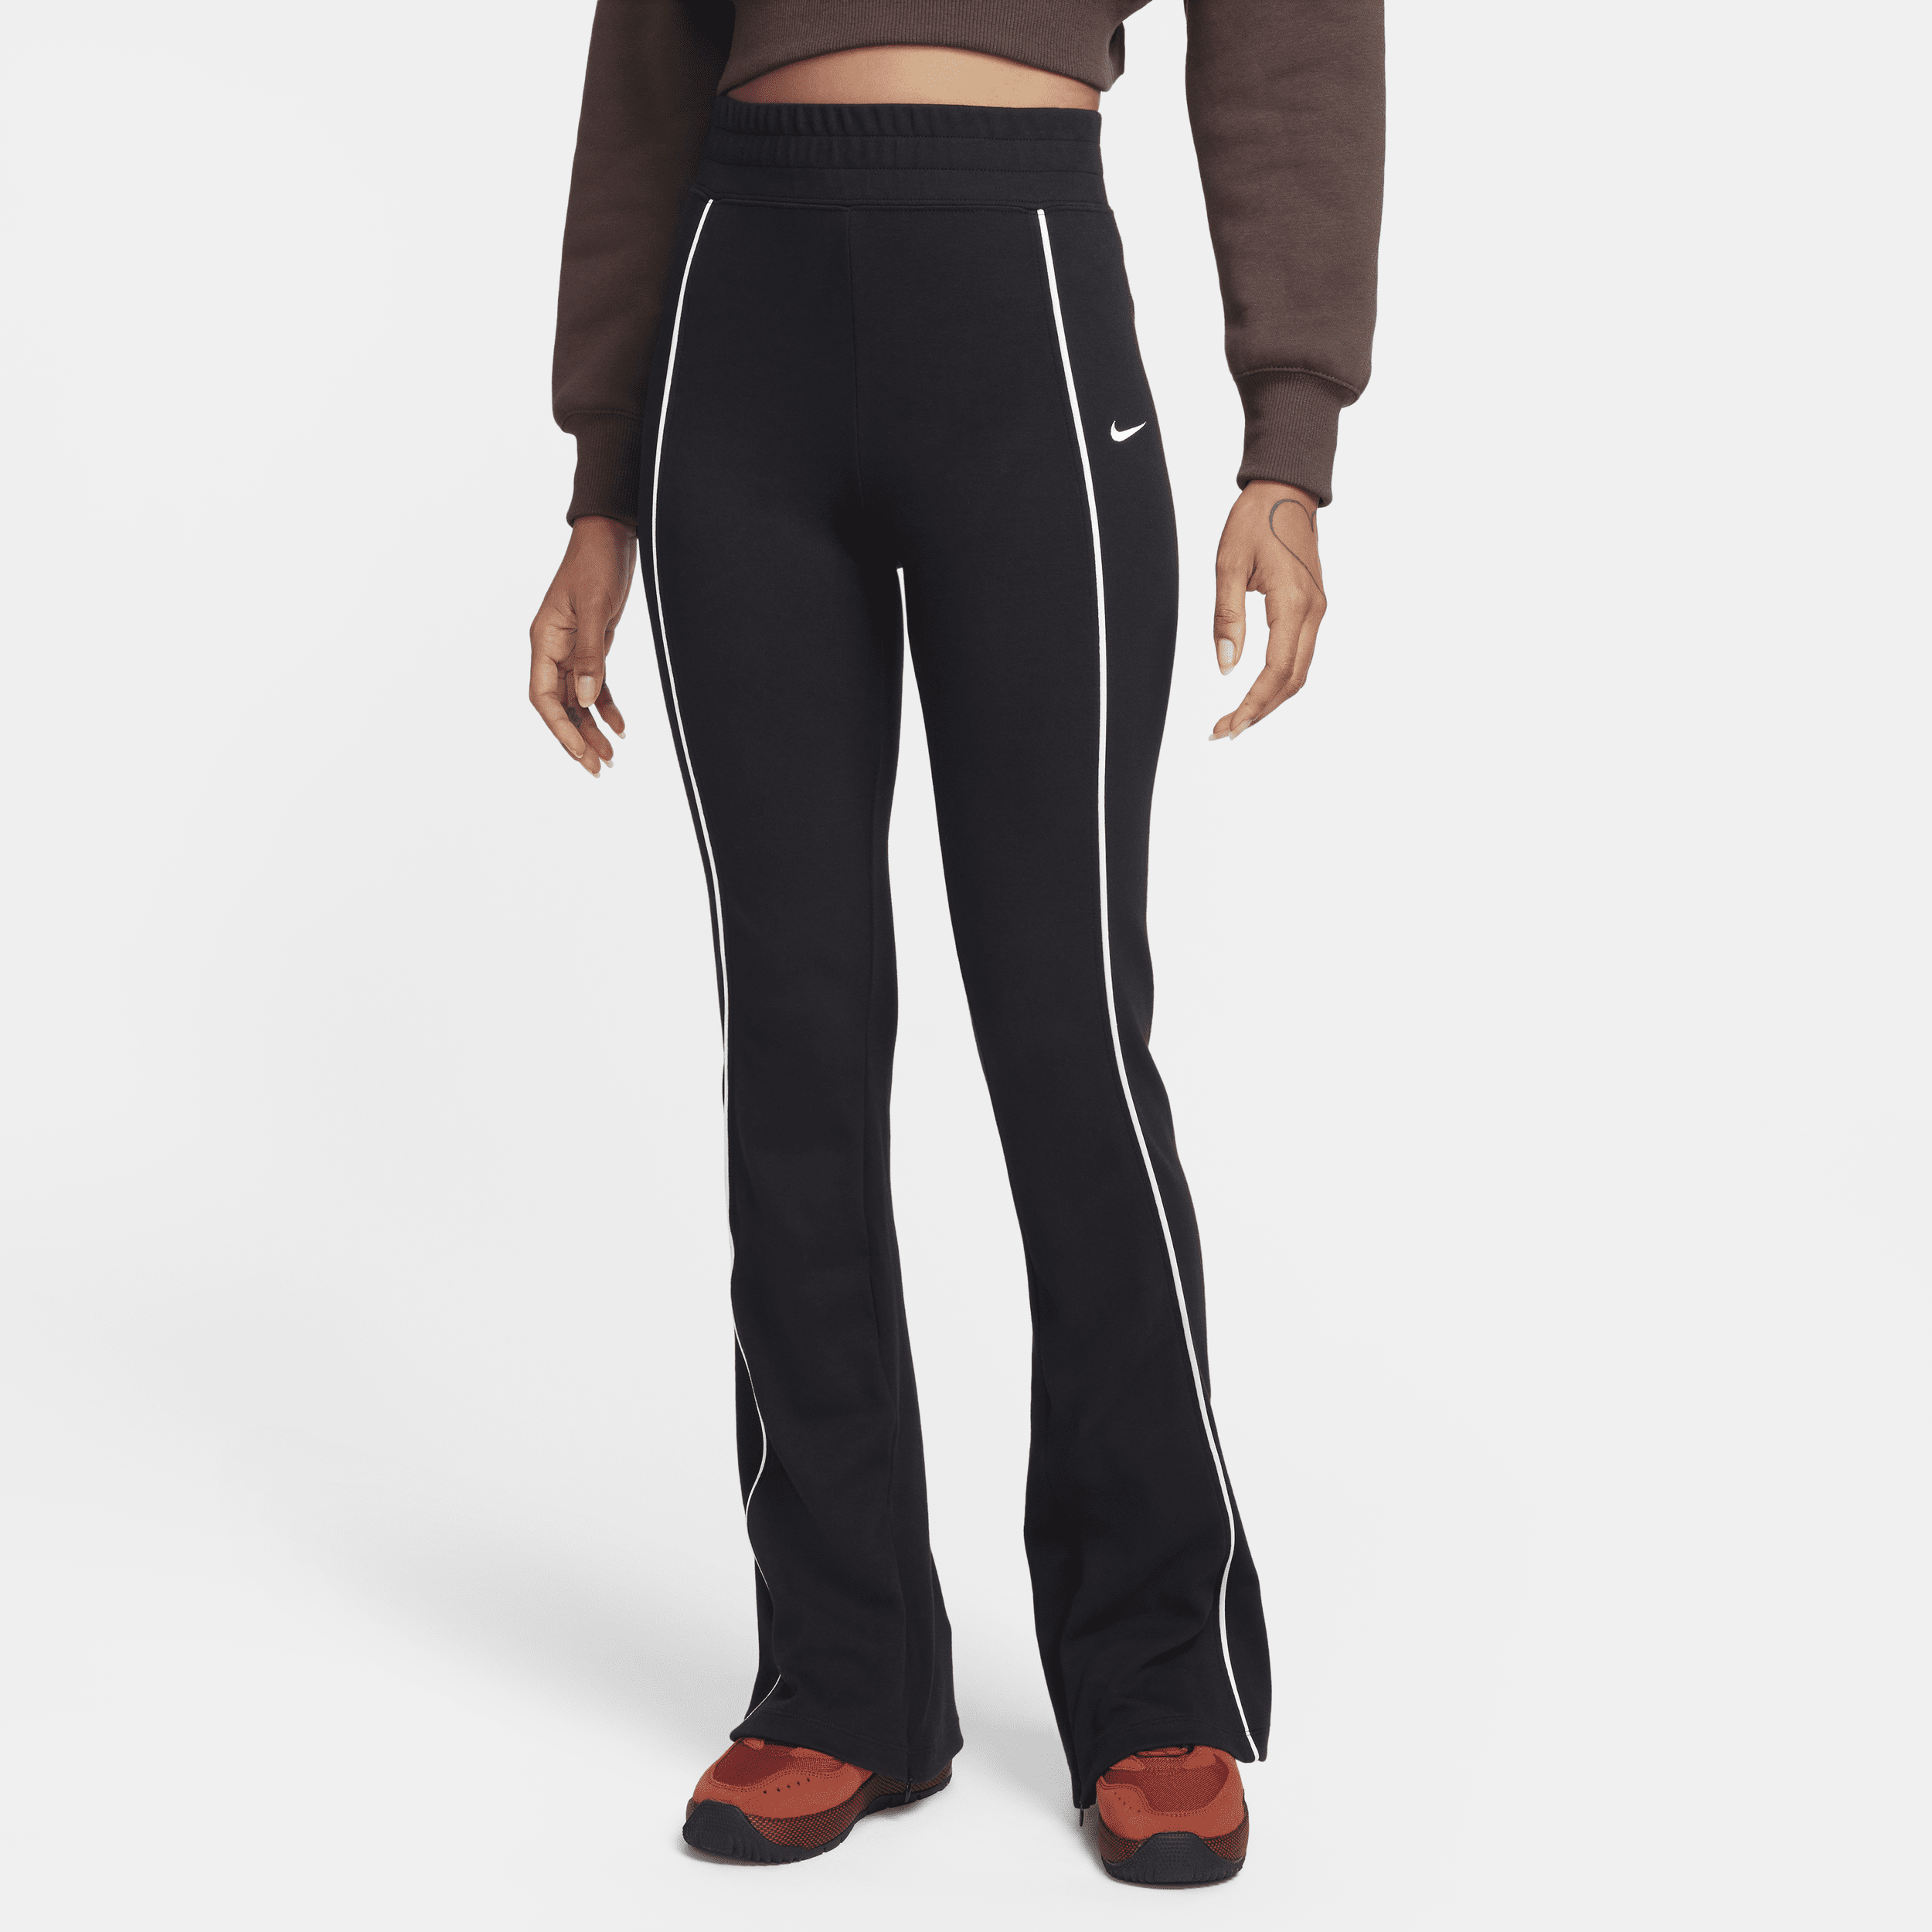 Nike Women's Sportswear Jersey Capris Pants, Black, Size Small, CJ3748-010